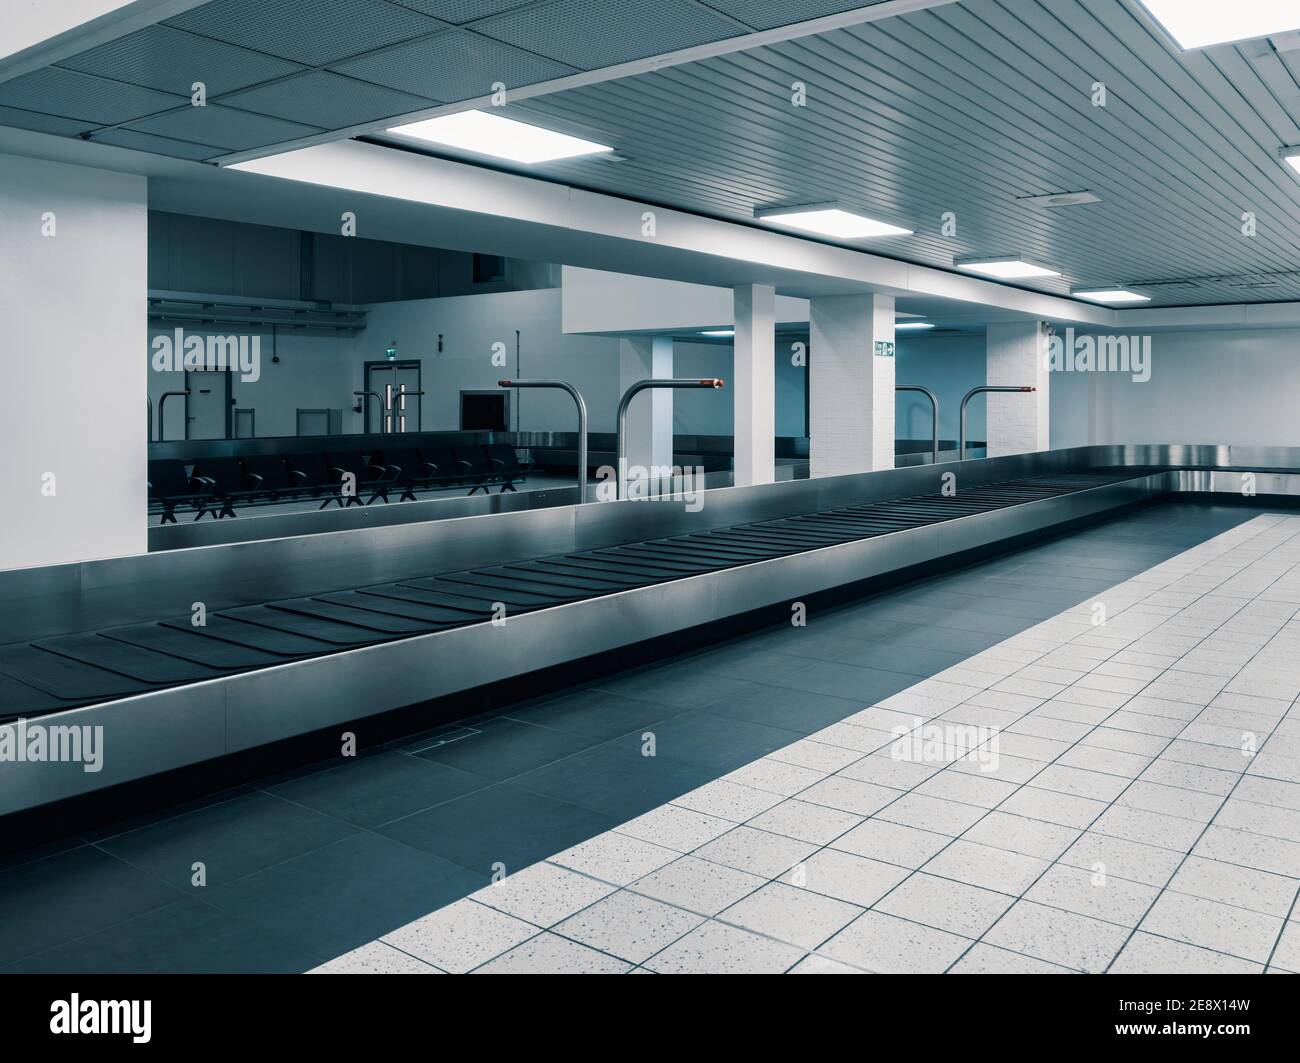 Covid-19 Lockdown - aéroport de Londres Luton - vide délaissé carrousel de bagages aux arrivées - effets de l'interdiction de voyager due au nouveau coronavirus Banque D'Images